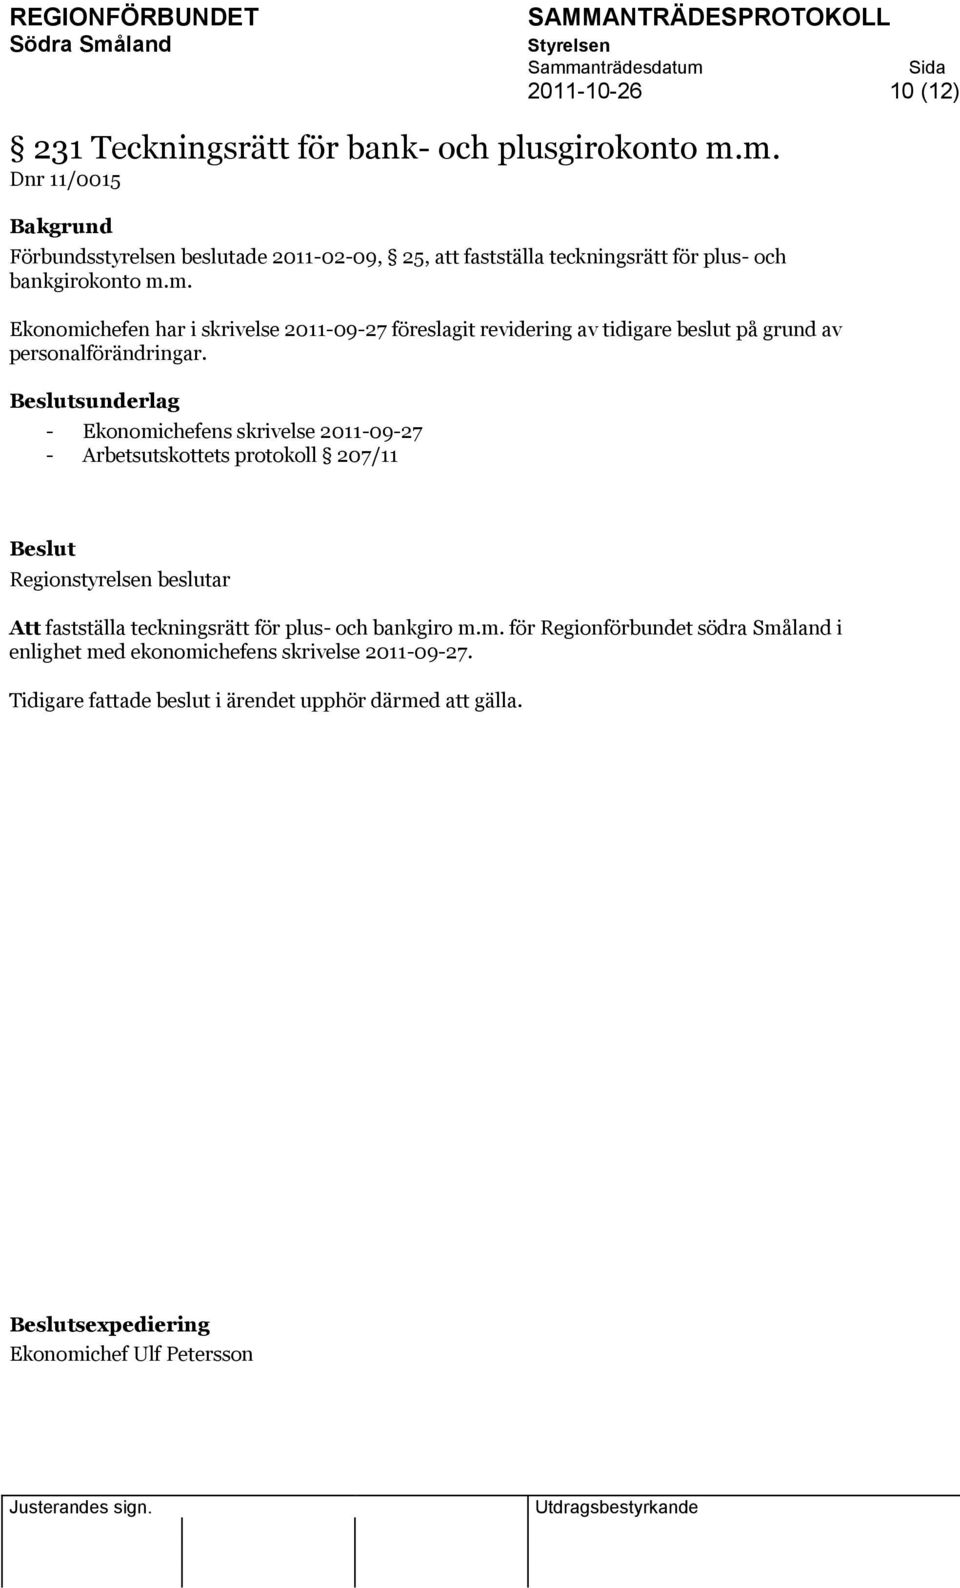 sunderlag - Ekonomichefens skrivelse 2011-09-27 - Arbetsutskottets protokoll 207/11 Att fastställa teckningsrätt för plus- och bankgiro m.m. för Regionförbundet södra Småland i enlighet med ekonomichefens skrivelse 2011-09-27.